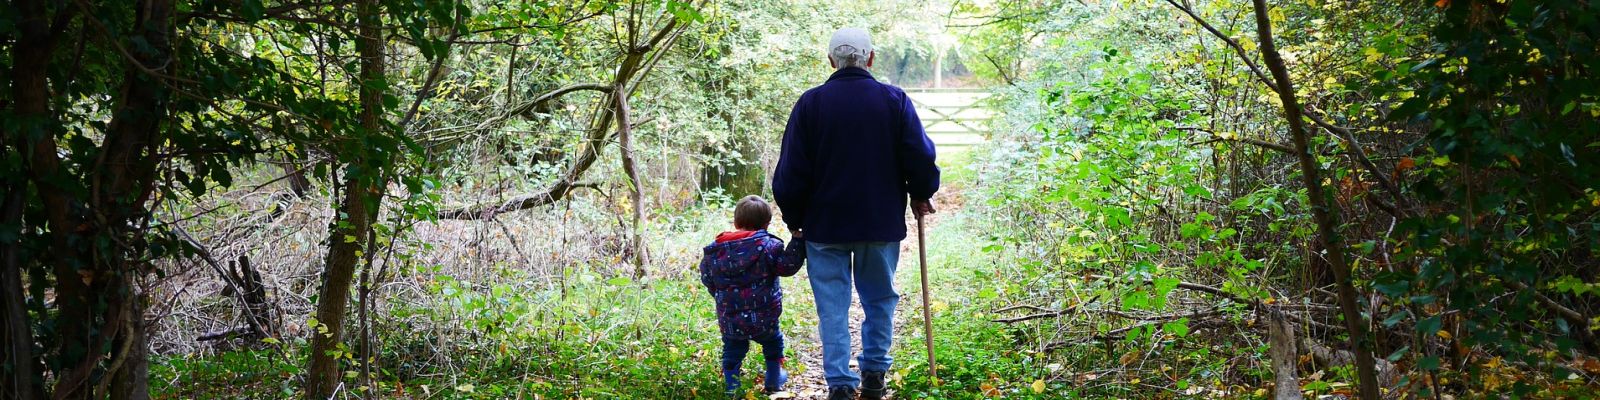 Opa mit Enkel im Wald gehen spazieren